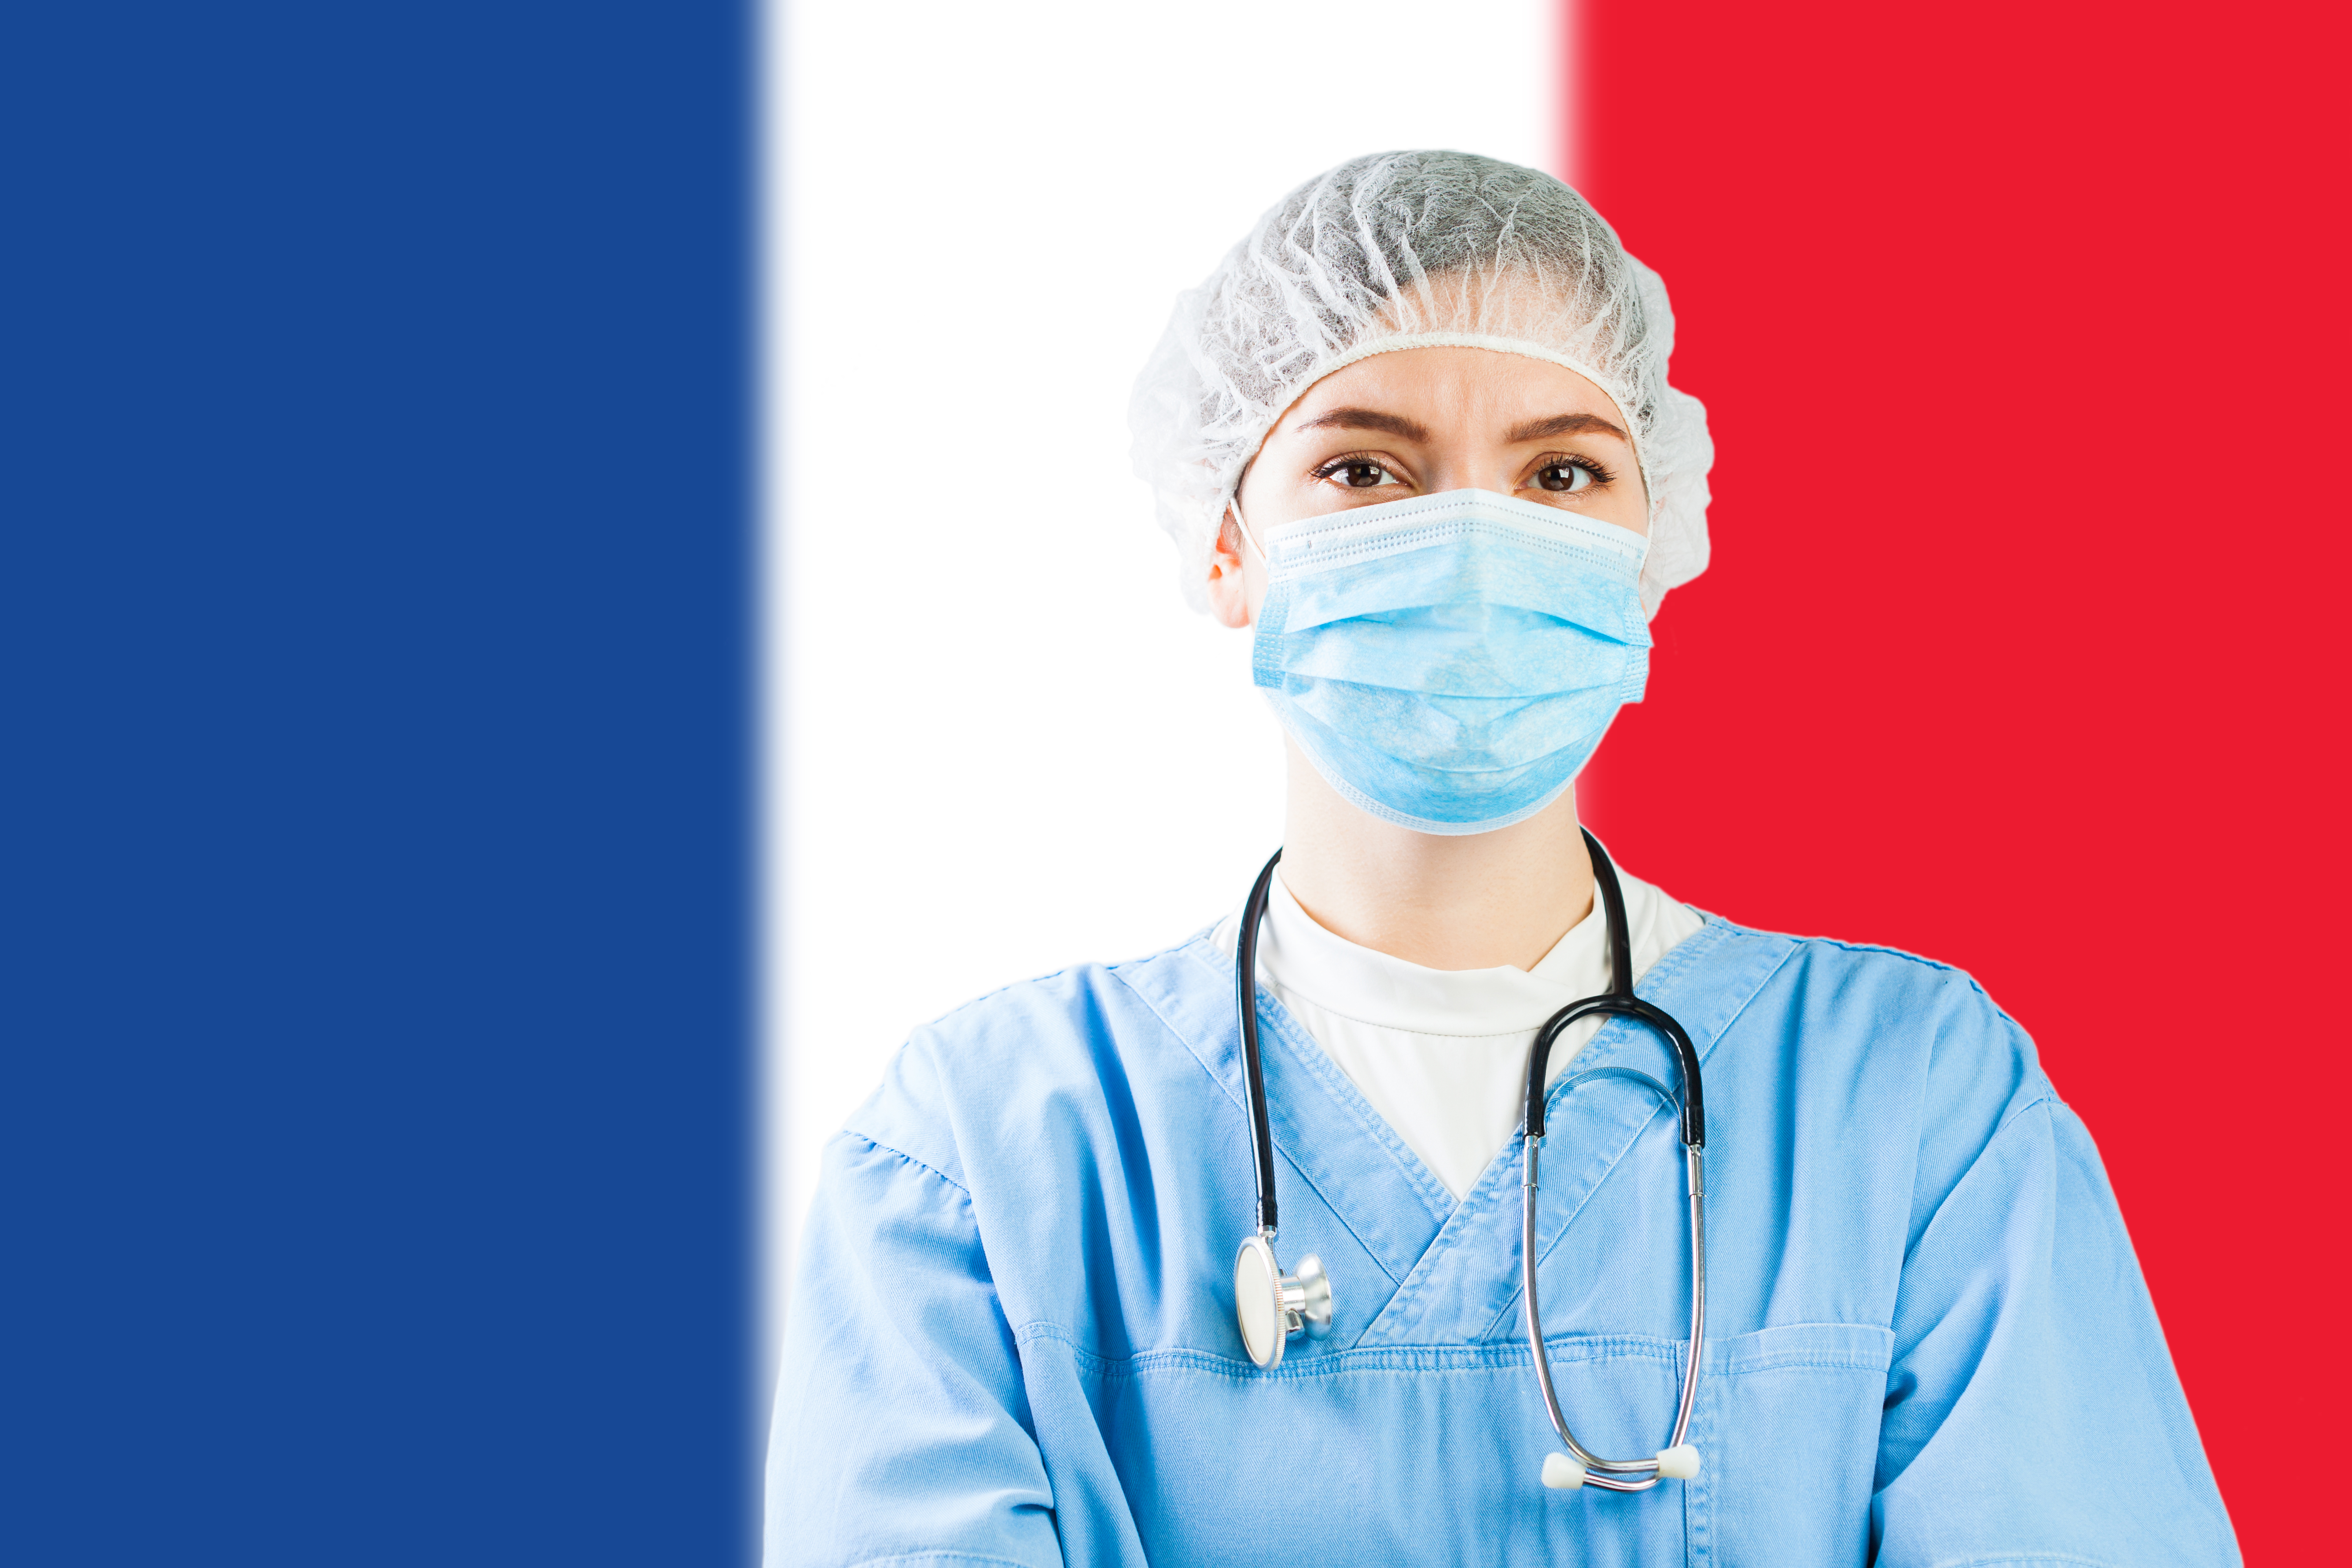 Врач на фоне флага Франции, где иностранцы могут получить лечение